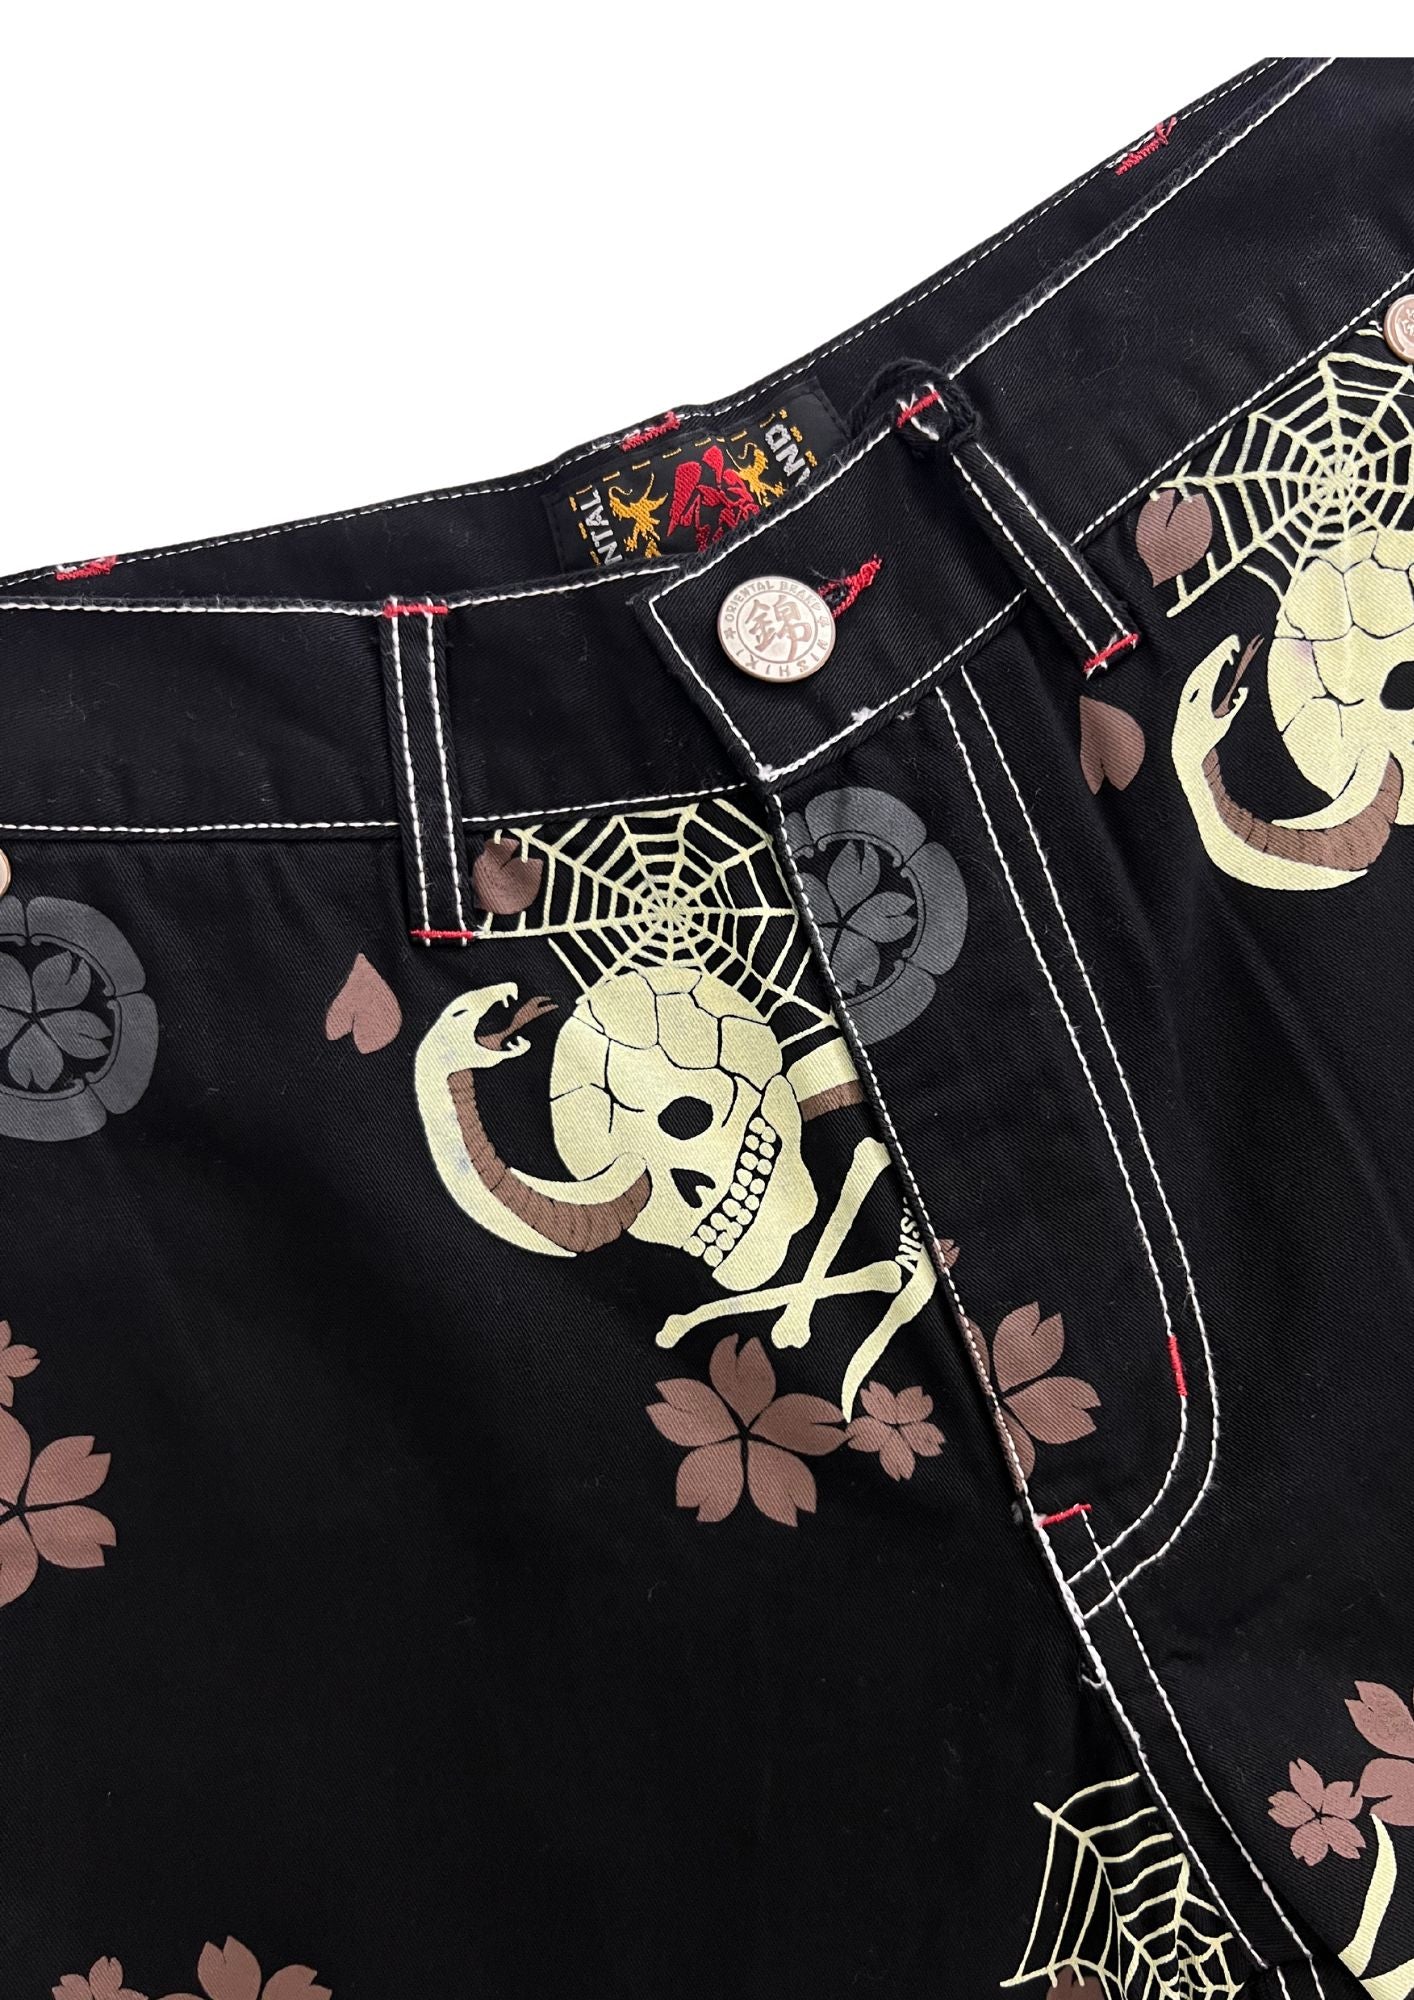 2010s Nishiki Japanese Skull Snake Short Pants